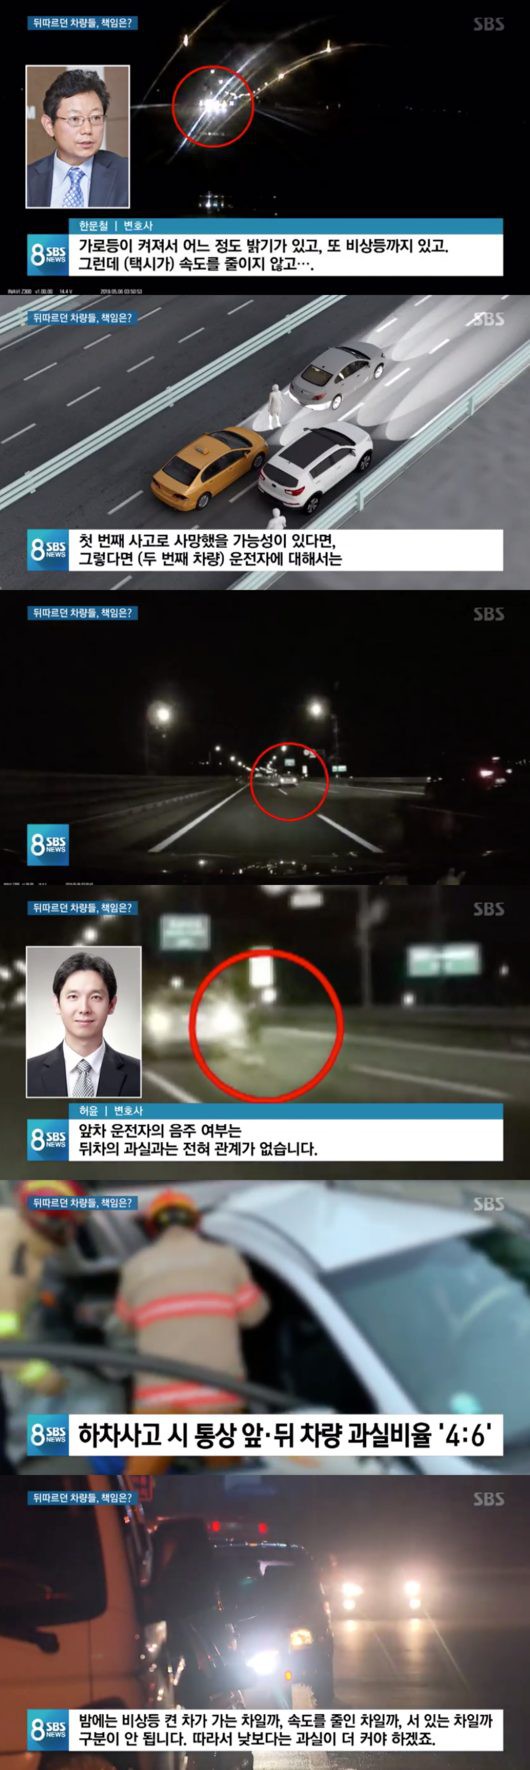 Han Ji Seong nhậu nhẹt trước khi bị 2 xe hơi đâm chết, cảnh sát: Người chồng hiện không phải là nghi phạm - Ảnh 4.